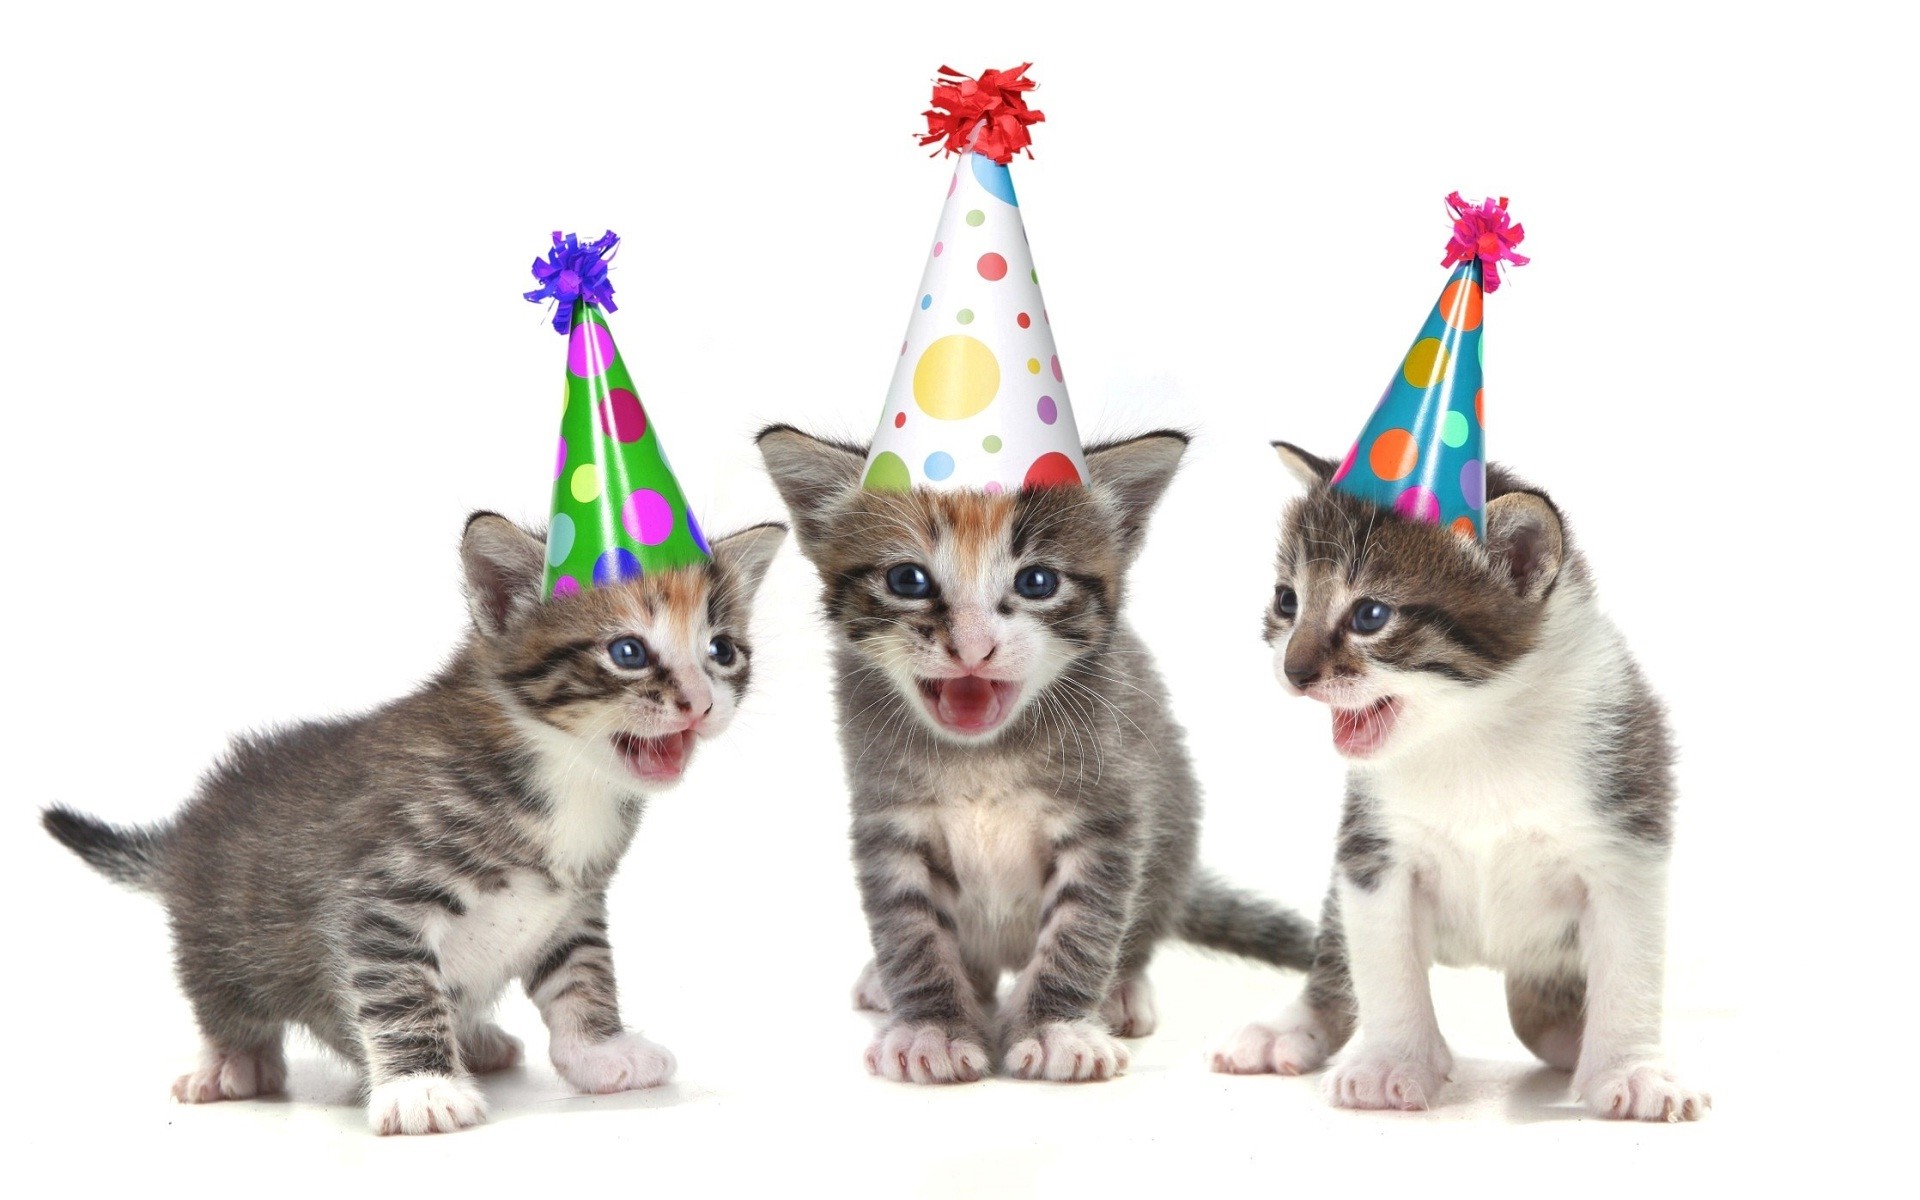 buon compleanno carta da parati divertente,gatto,gatti di piccola e media taglia,felidae,gattino,wirehair americano